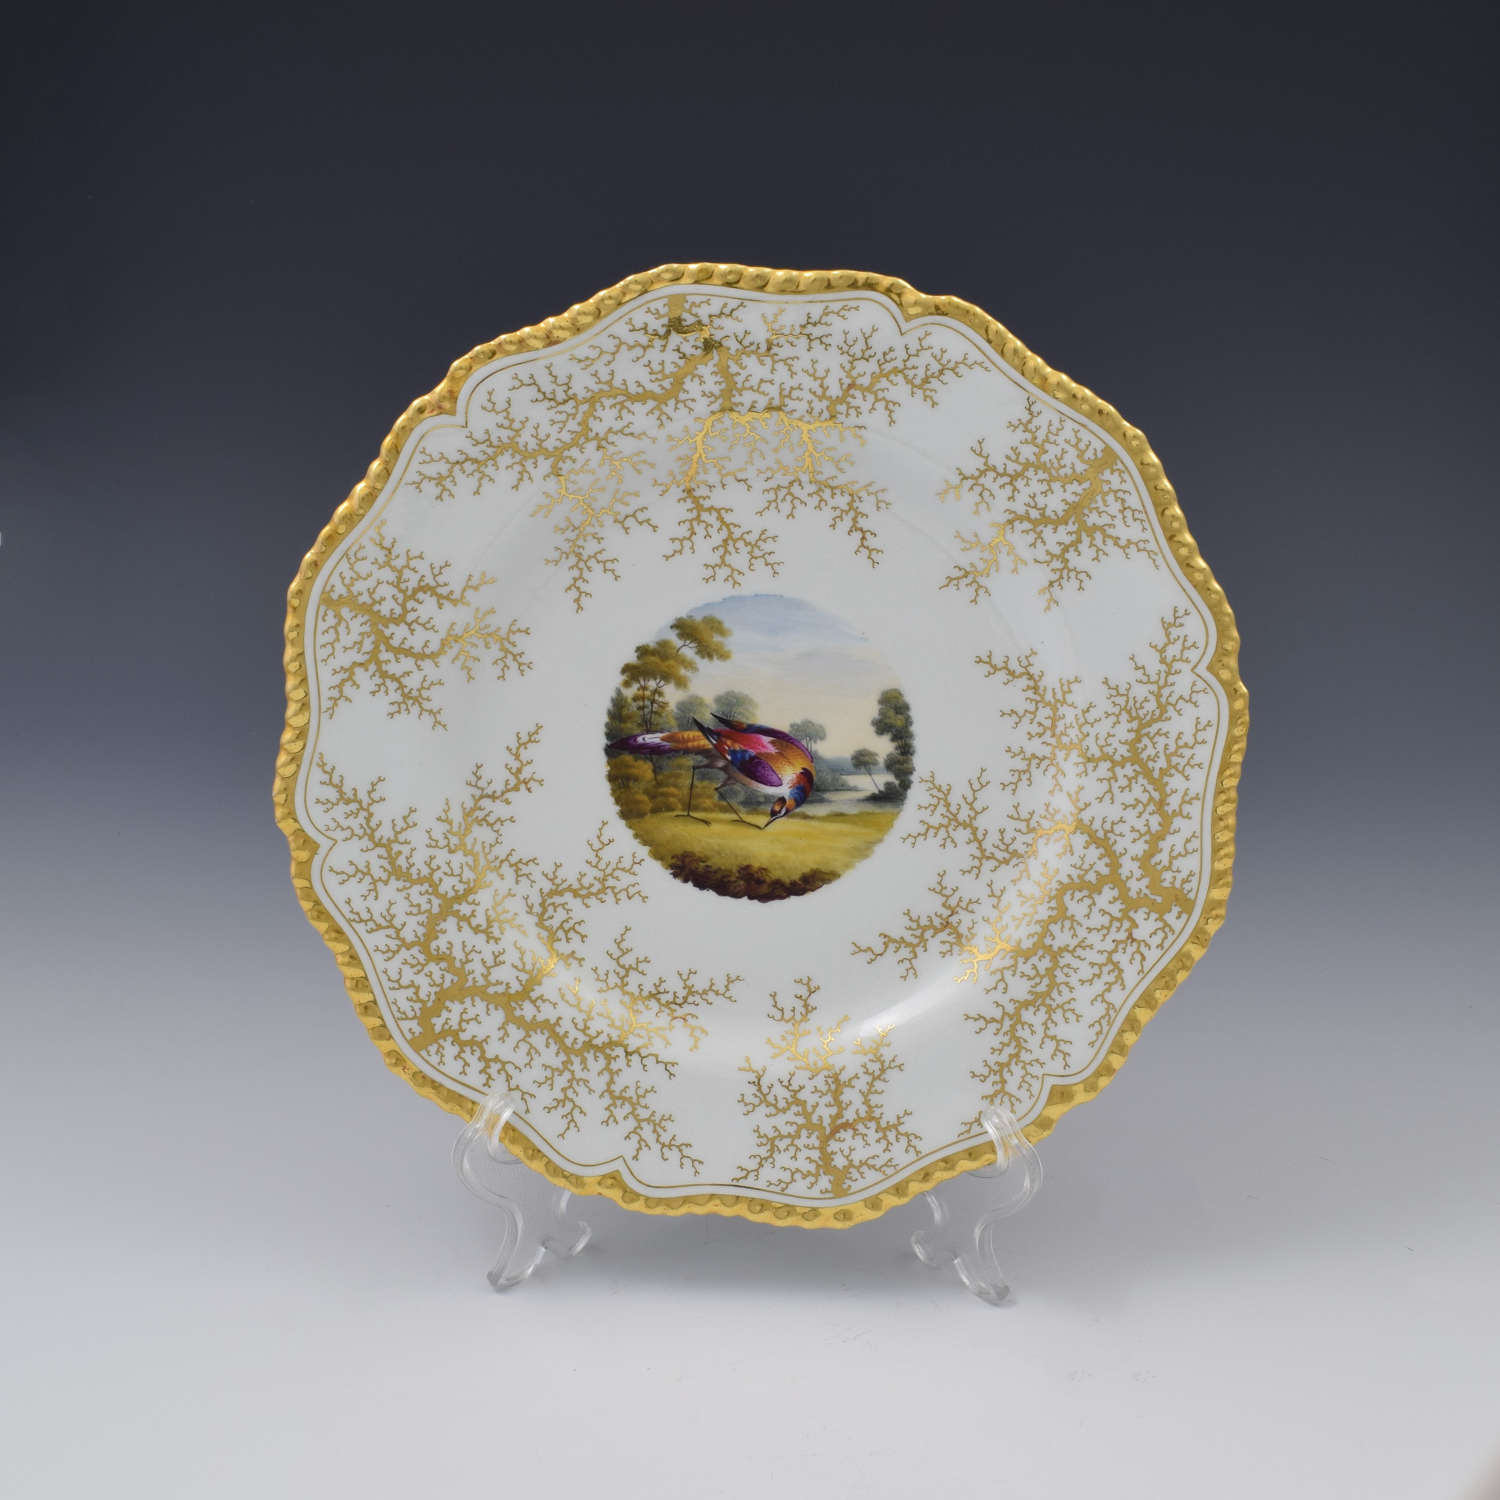 Flight Barr & Barr Worcester Porcelain Fancy Bird Dessert Plate c.1815